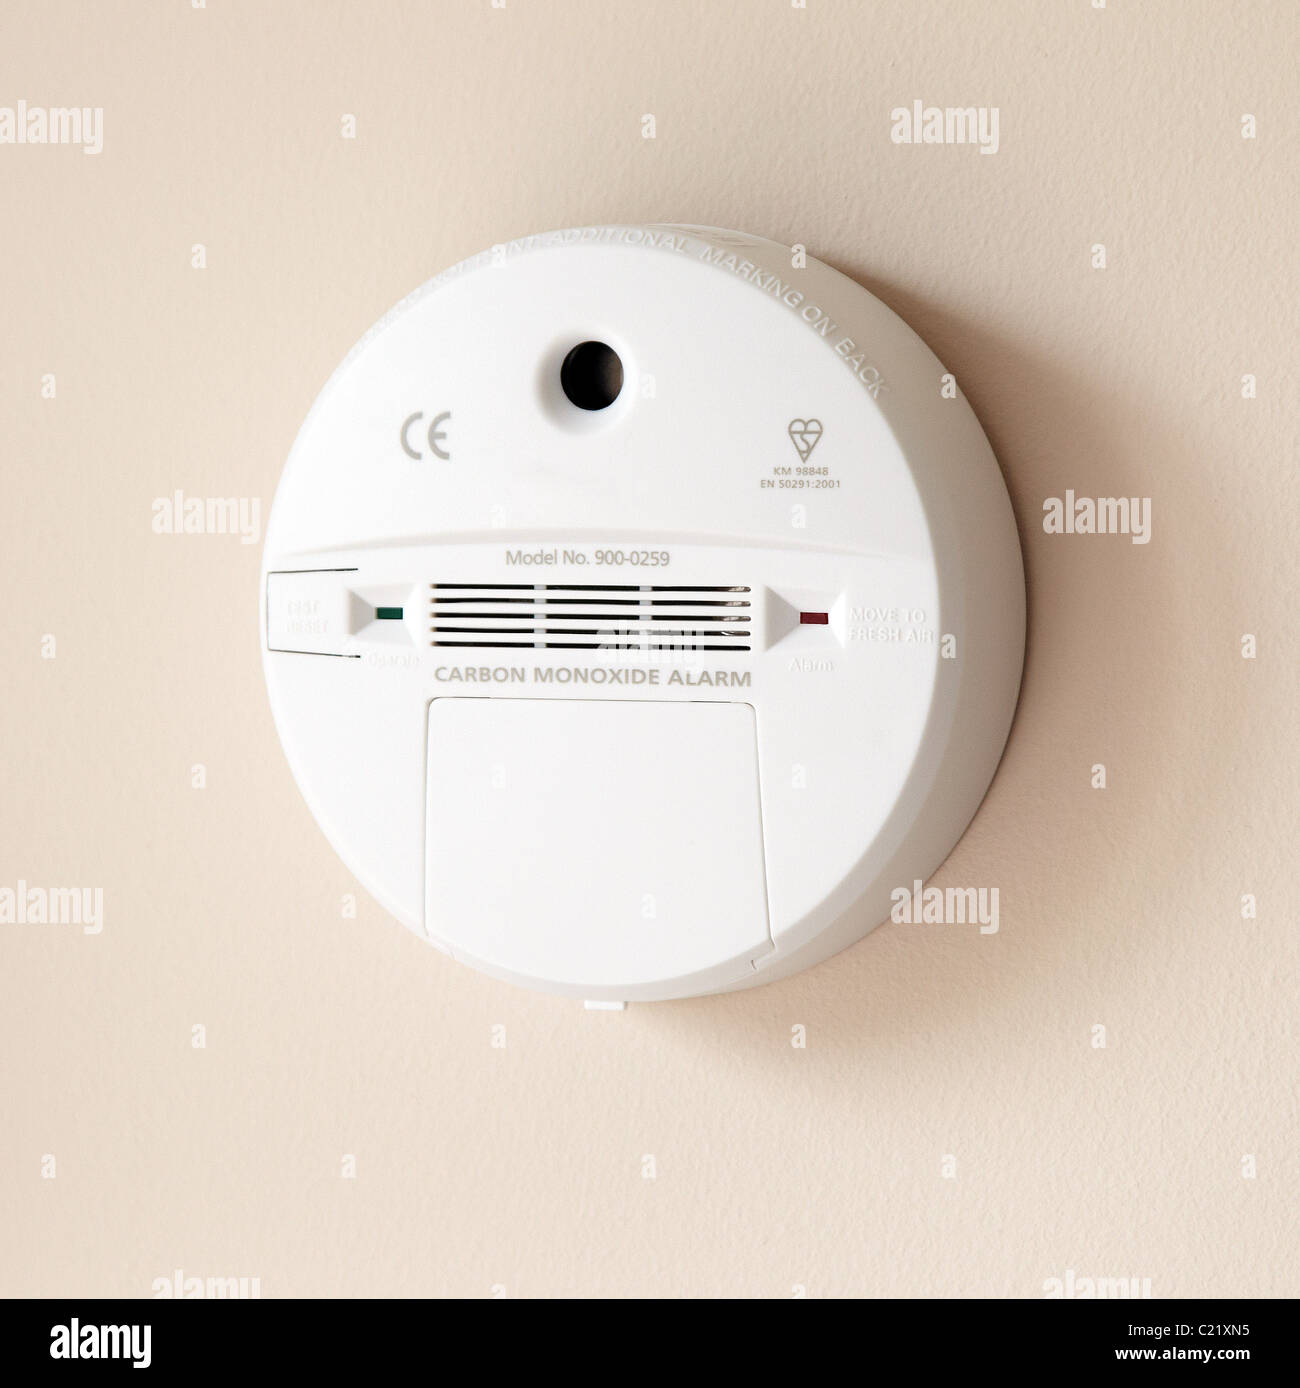 Carbon Monoxide alarm Stock Photo